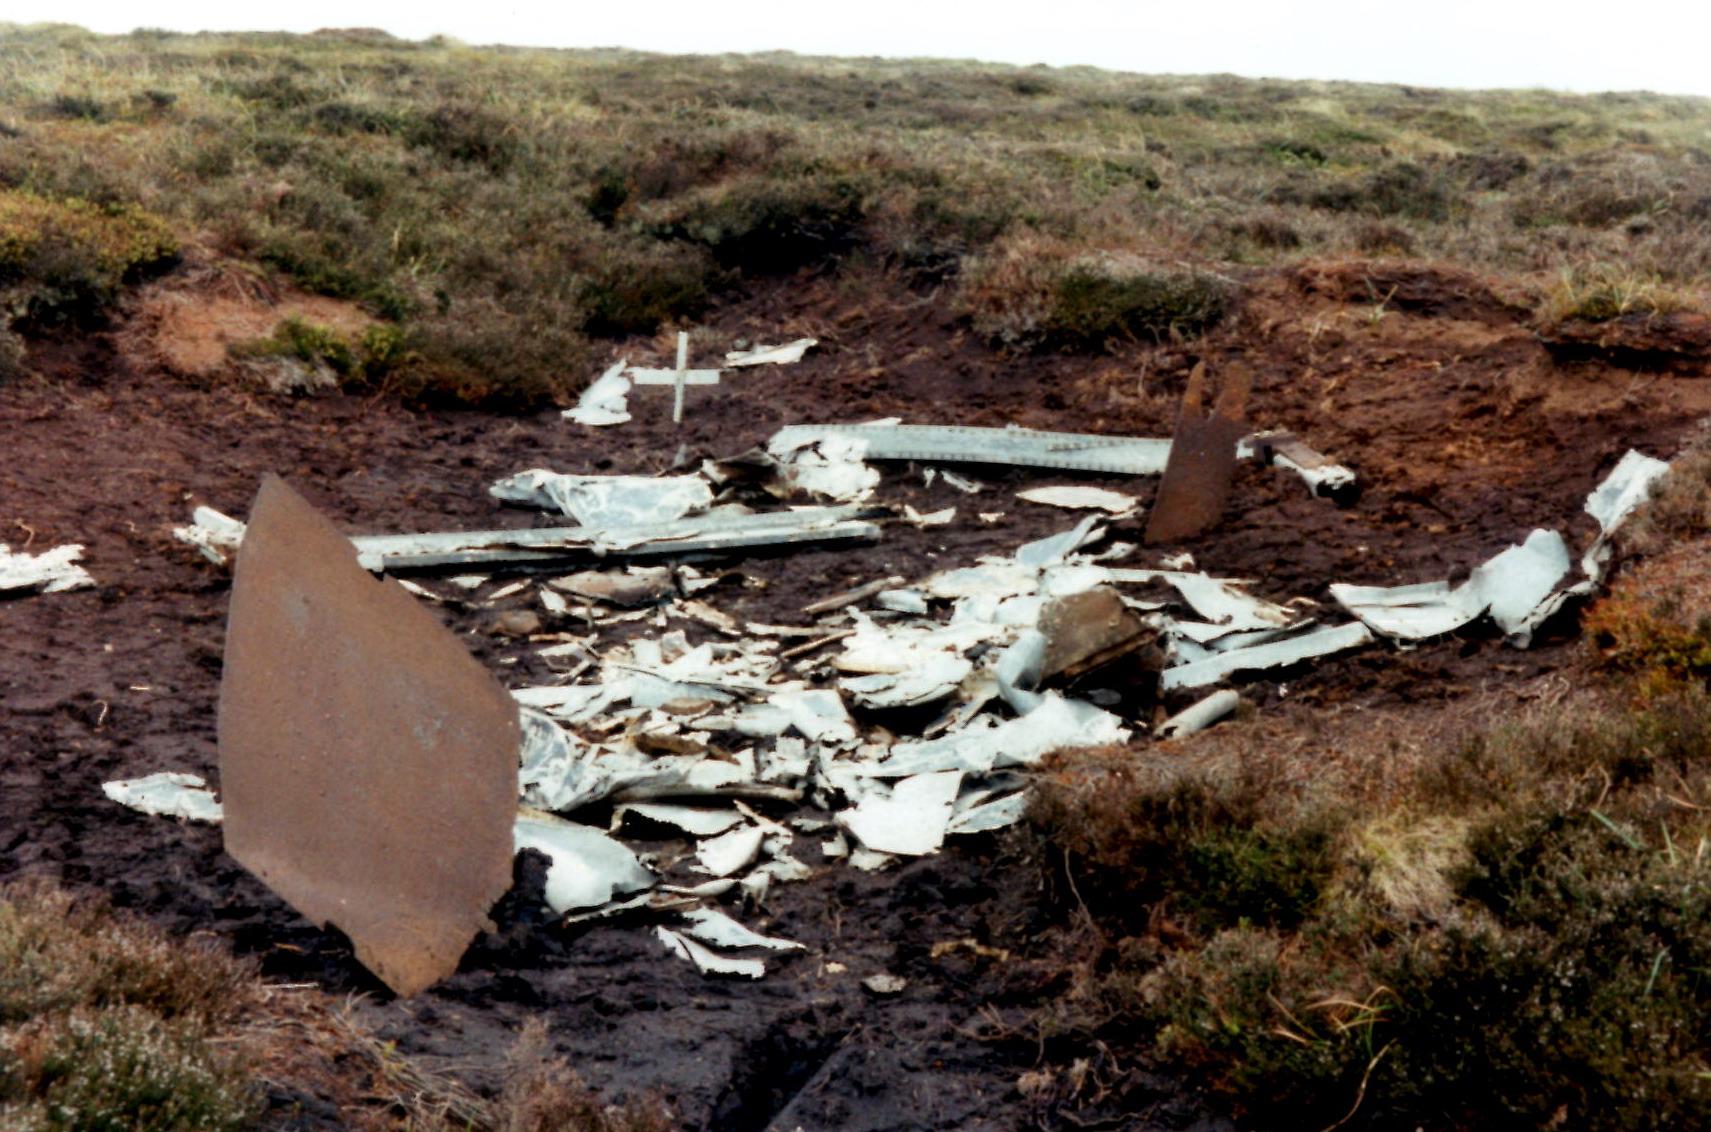 Halifax wreckage on Blackden Edge